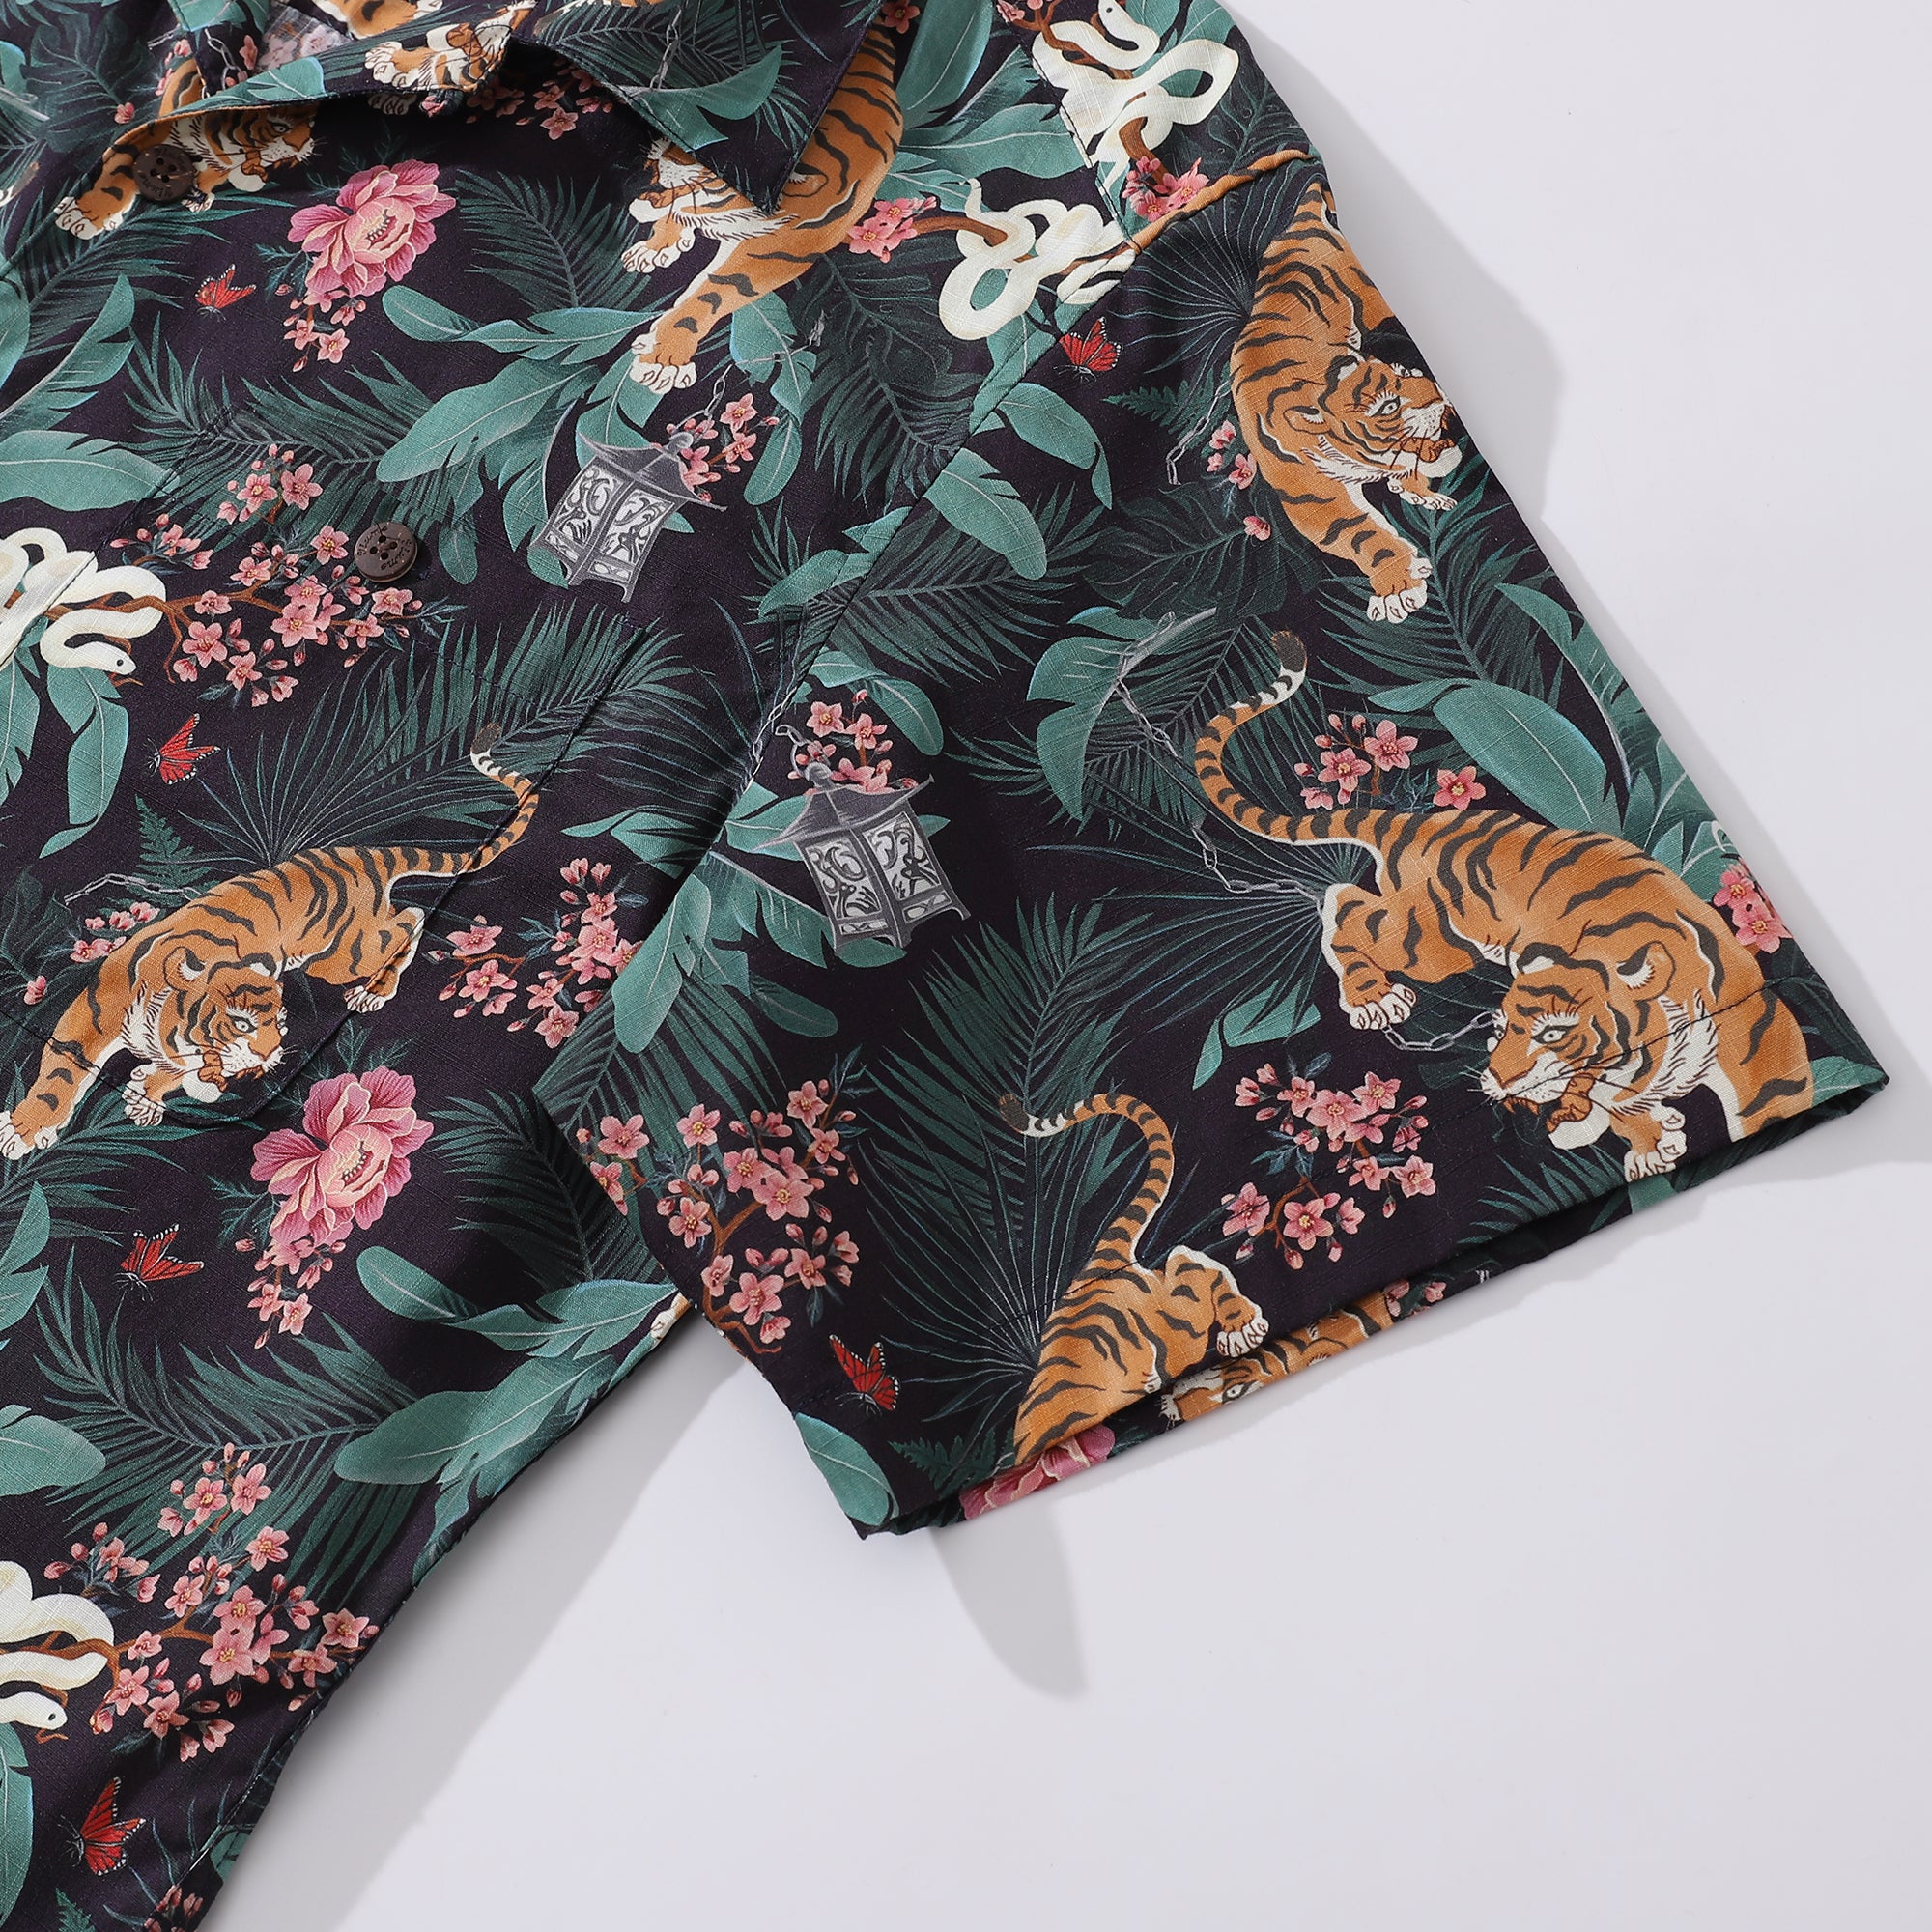 Camicia hawaiana da uomo Camicia con stampa tigre tra fiori Colletto camp 100% cotone